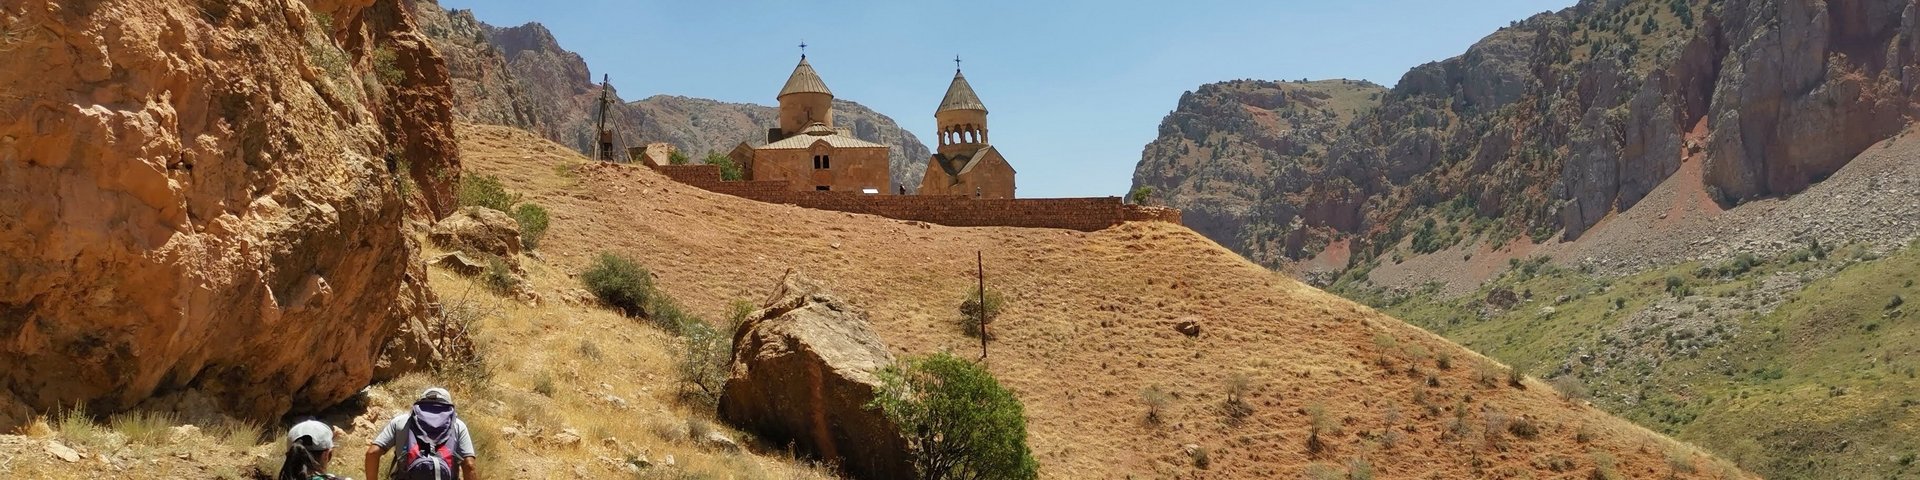 Wanderung zum Kloster Noravank in Armenien